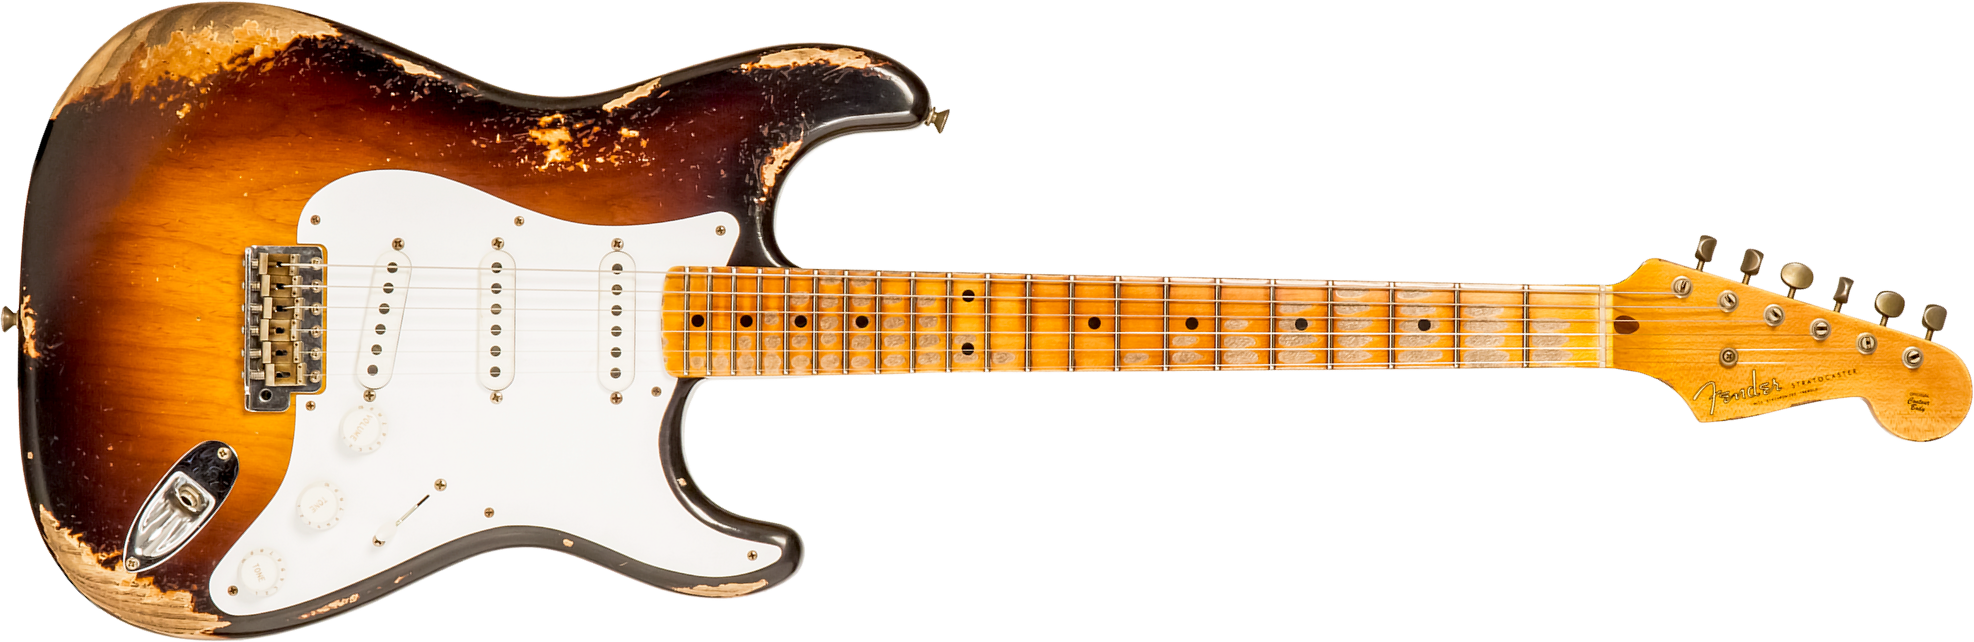 Fender Custom Shop Strat 1954 70th Anniv. 3s Trem Mn #xn4324 - Heavy Relic Wide Fade 2-color Sunburst - Guitare Électrique Forme Str - Main picture